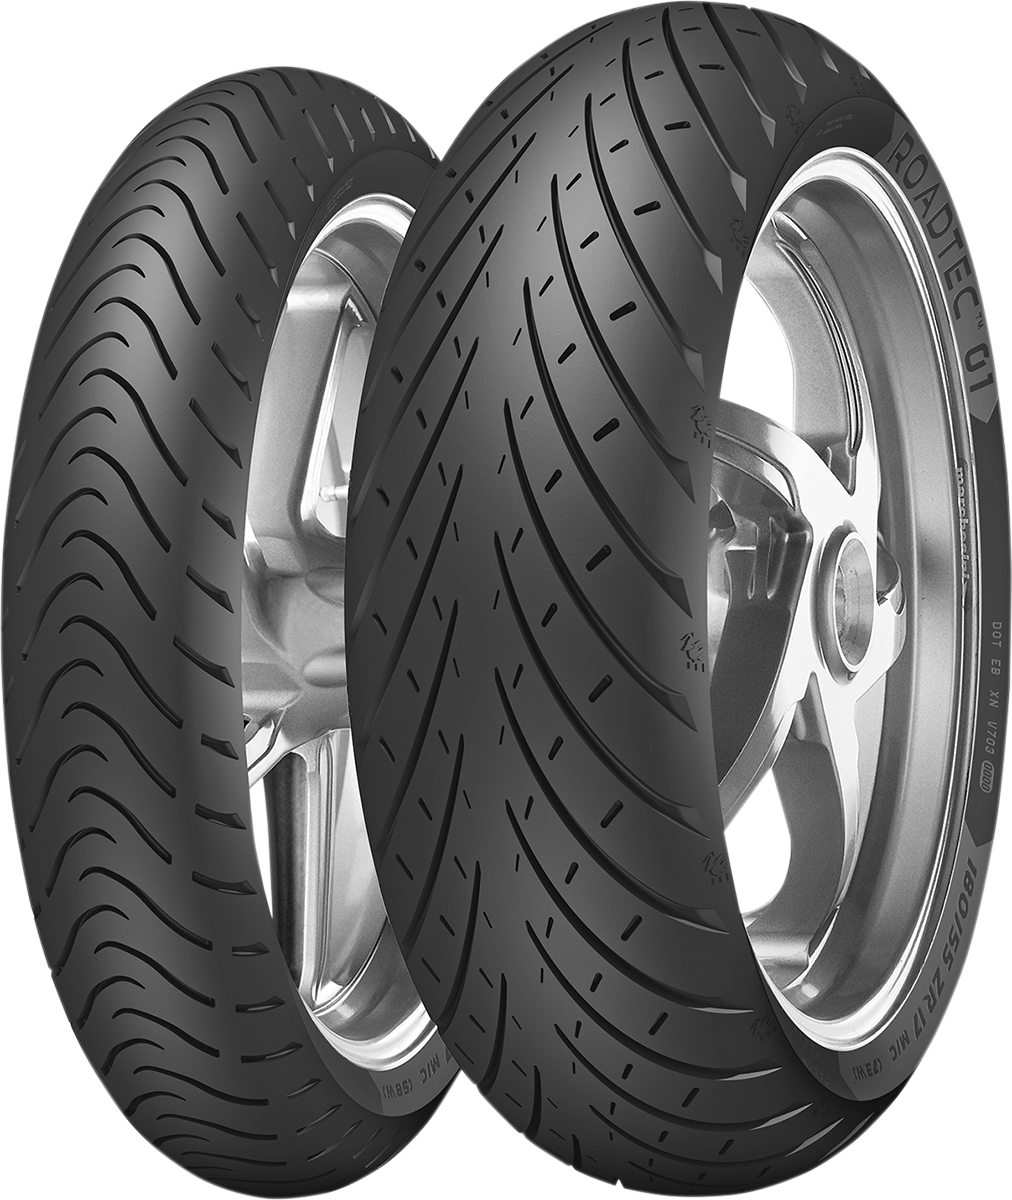 METZELER Tire - Roadtec* 01 - Rear - 190/50R17 - (73W) 2670400